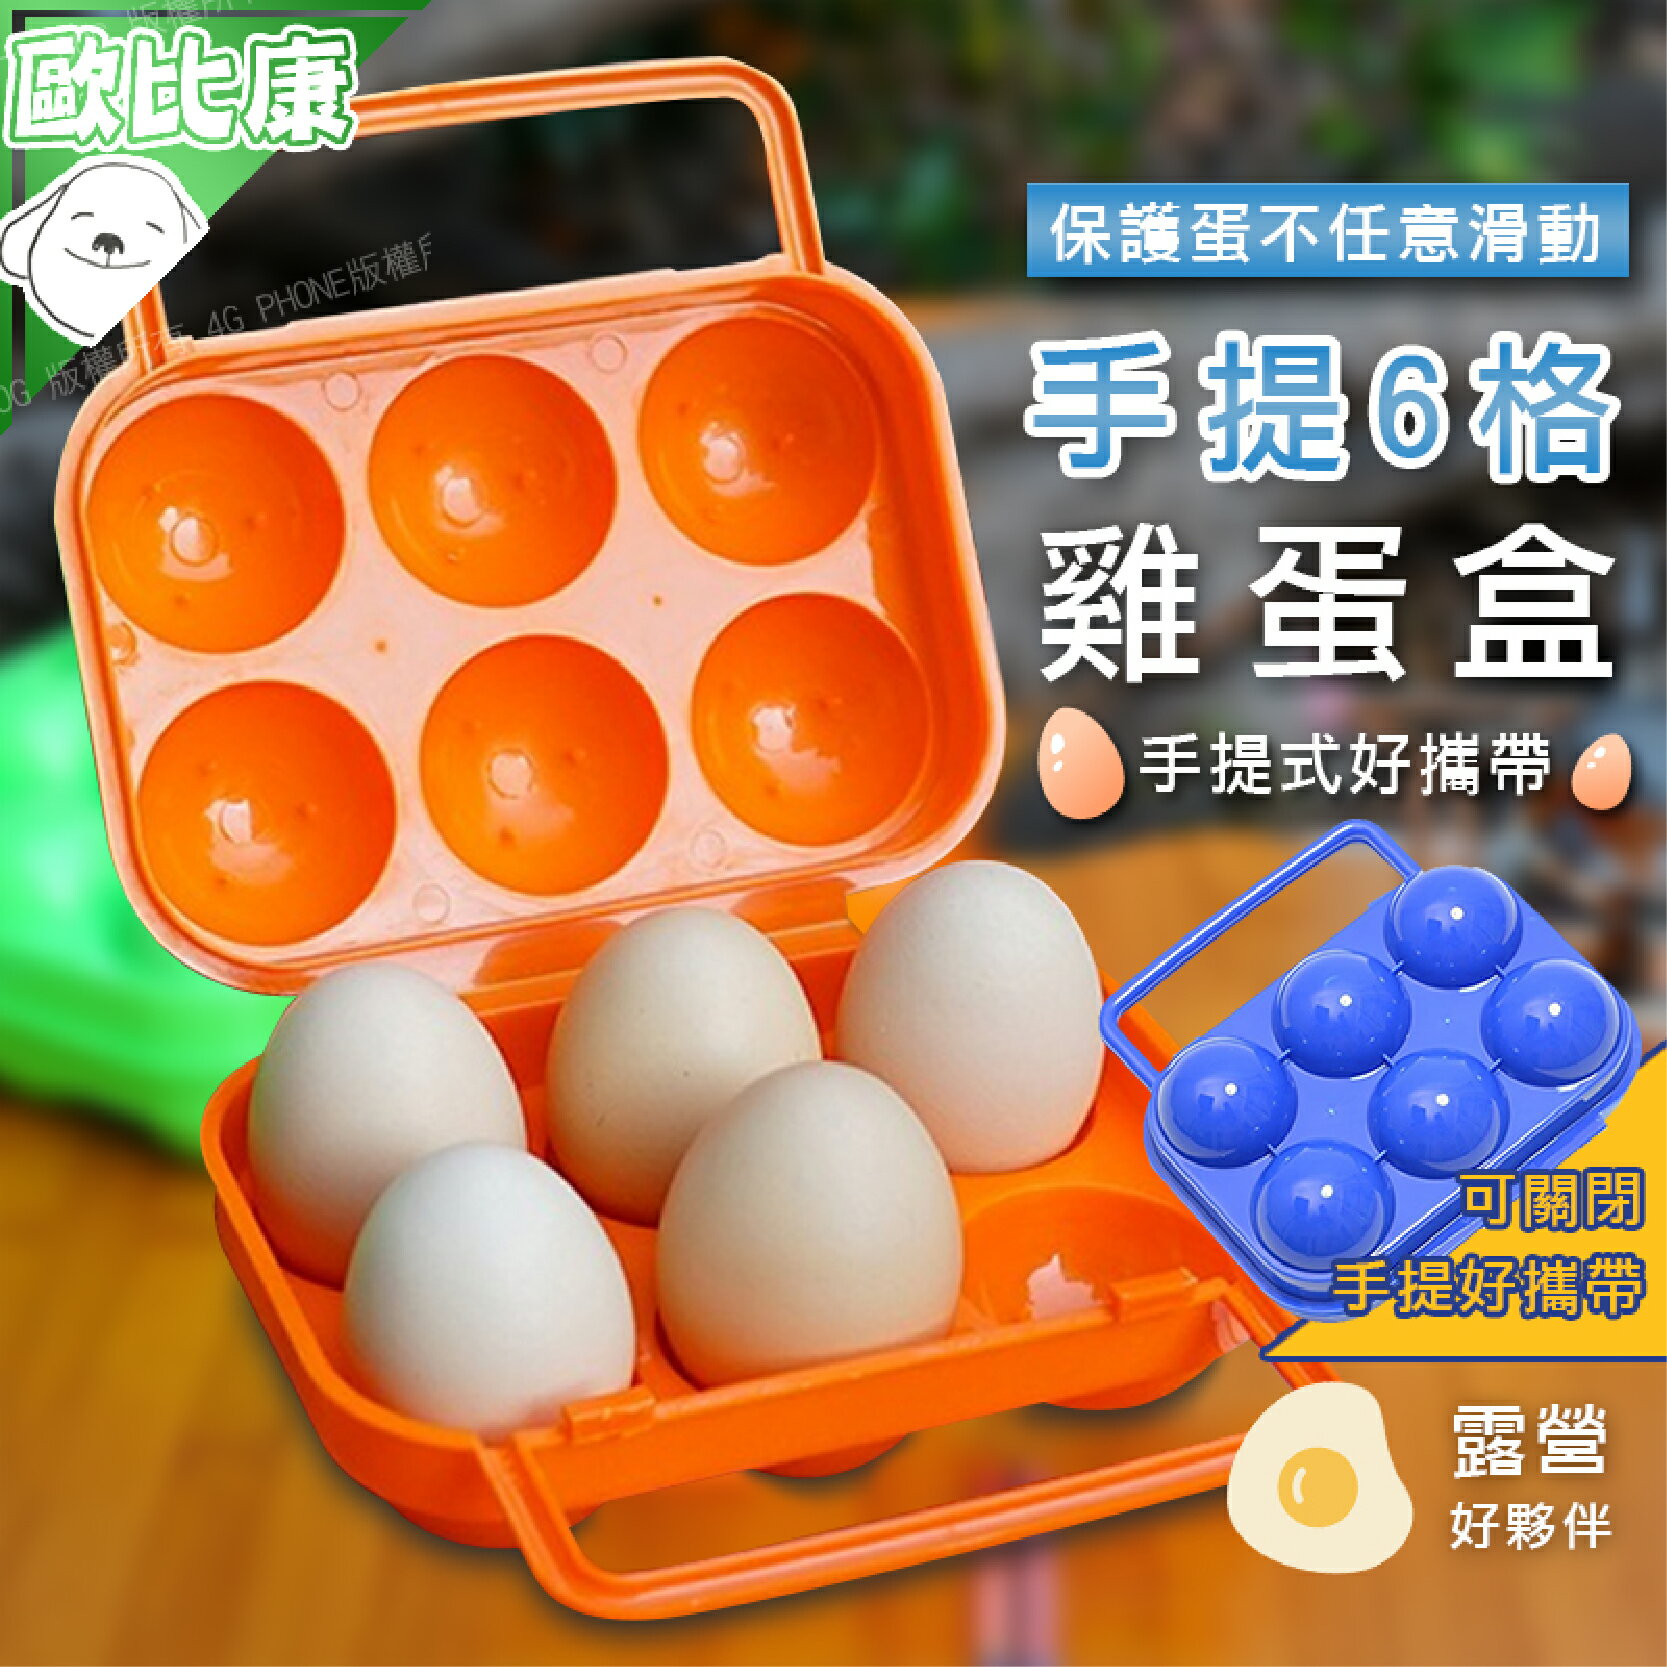 【保護雞蛋】手提6格雞蛋盒 攜帶式雞蛋盒 手提蛋盒 雞蛋收納盒 可攜式蛋盒 6格蛋盒手提雞蛋收納盒 露營必備 野炊